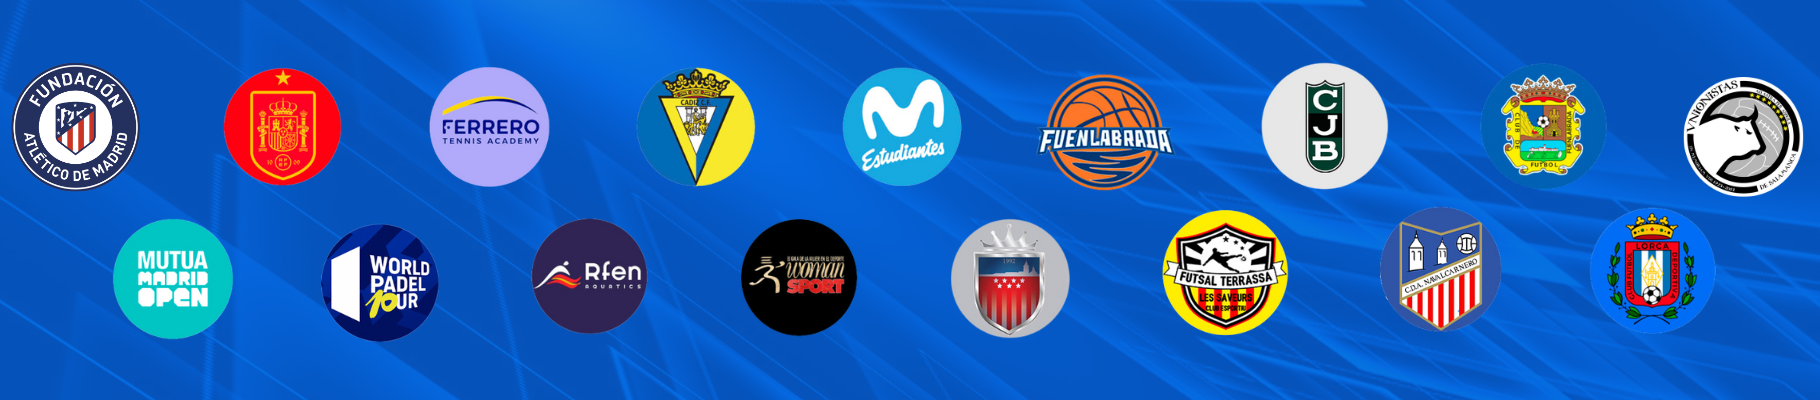 Fisaude es patrocinador de más de 20 equipos y deportistas profesionales